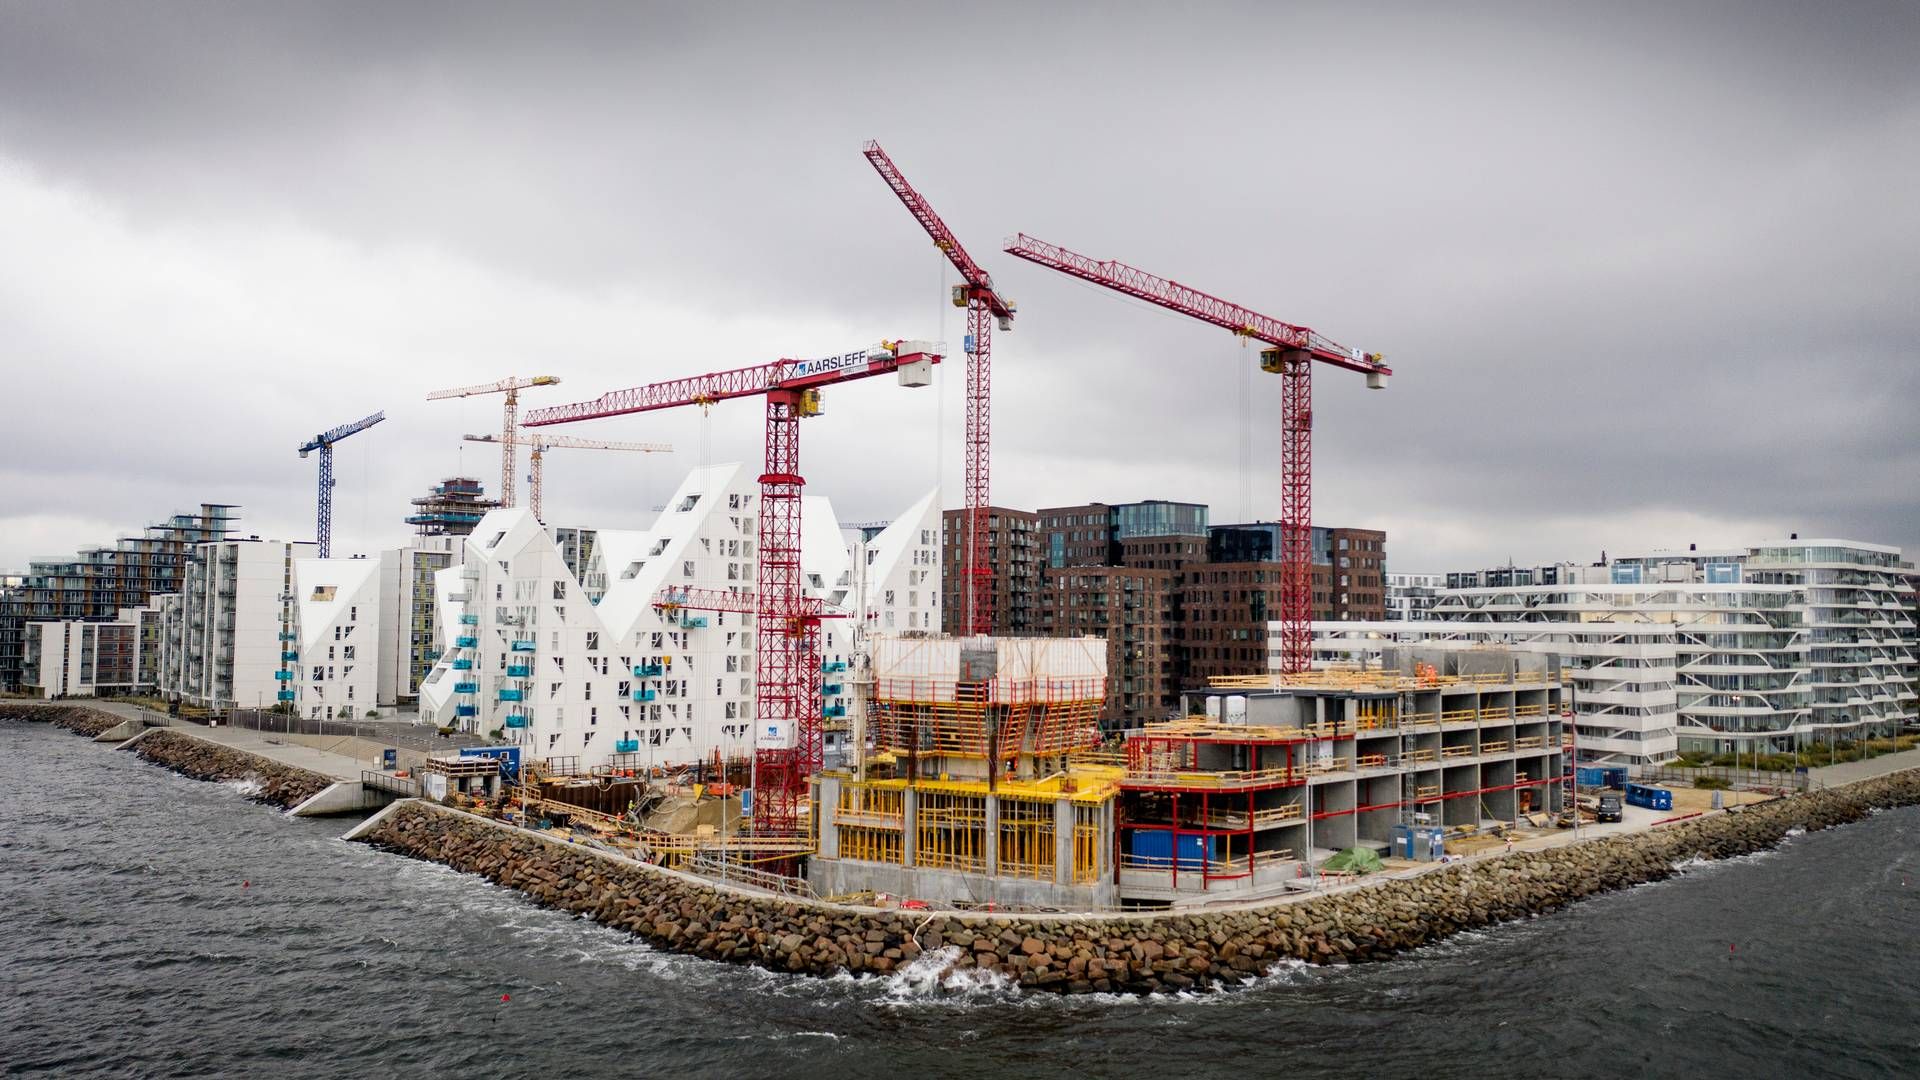 Uenigheder i byggebranchen giver travlhed hos advokater. Arkivfoto fra Aarhus Ø.